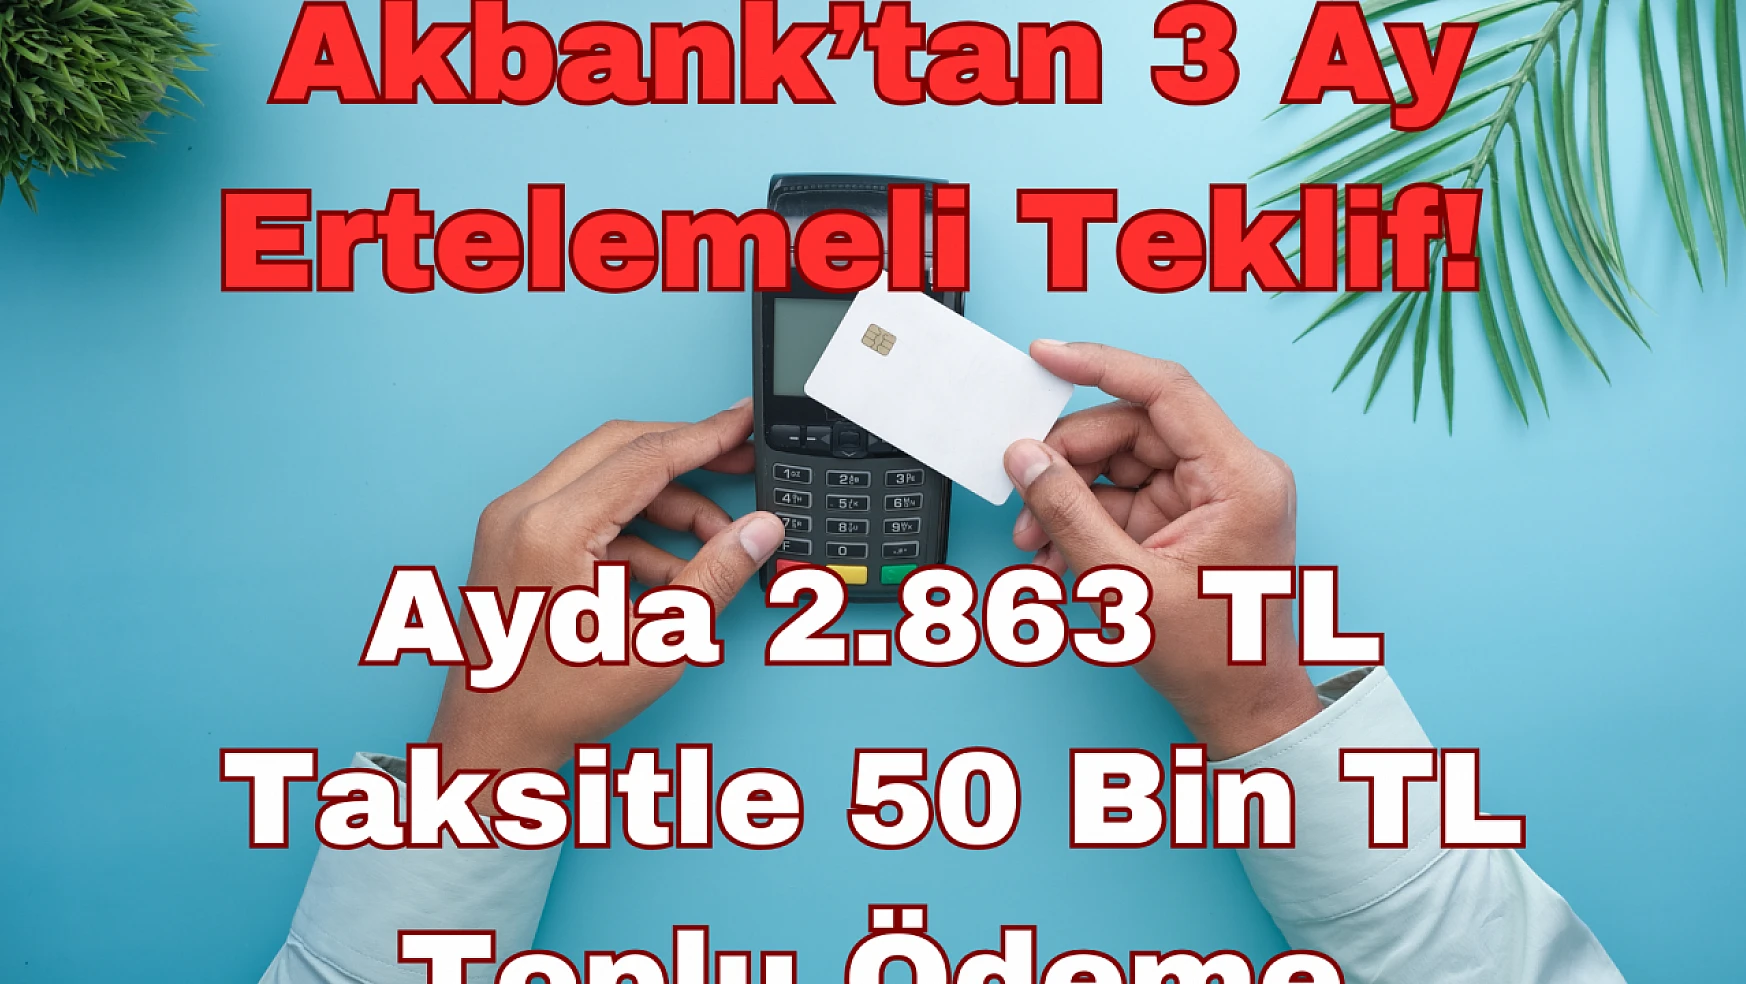 Akbank'tan 3 Ay Ertelemeli Teklif: Ayda 2.863 TL Taksitle 50 Bin TL Toplu Ödeme!